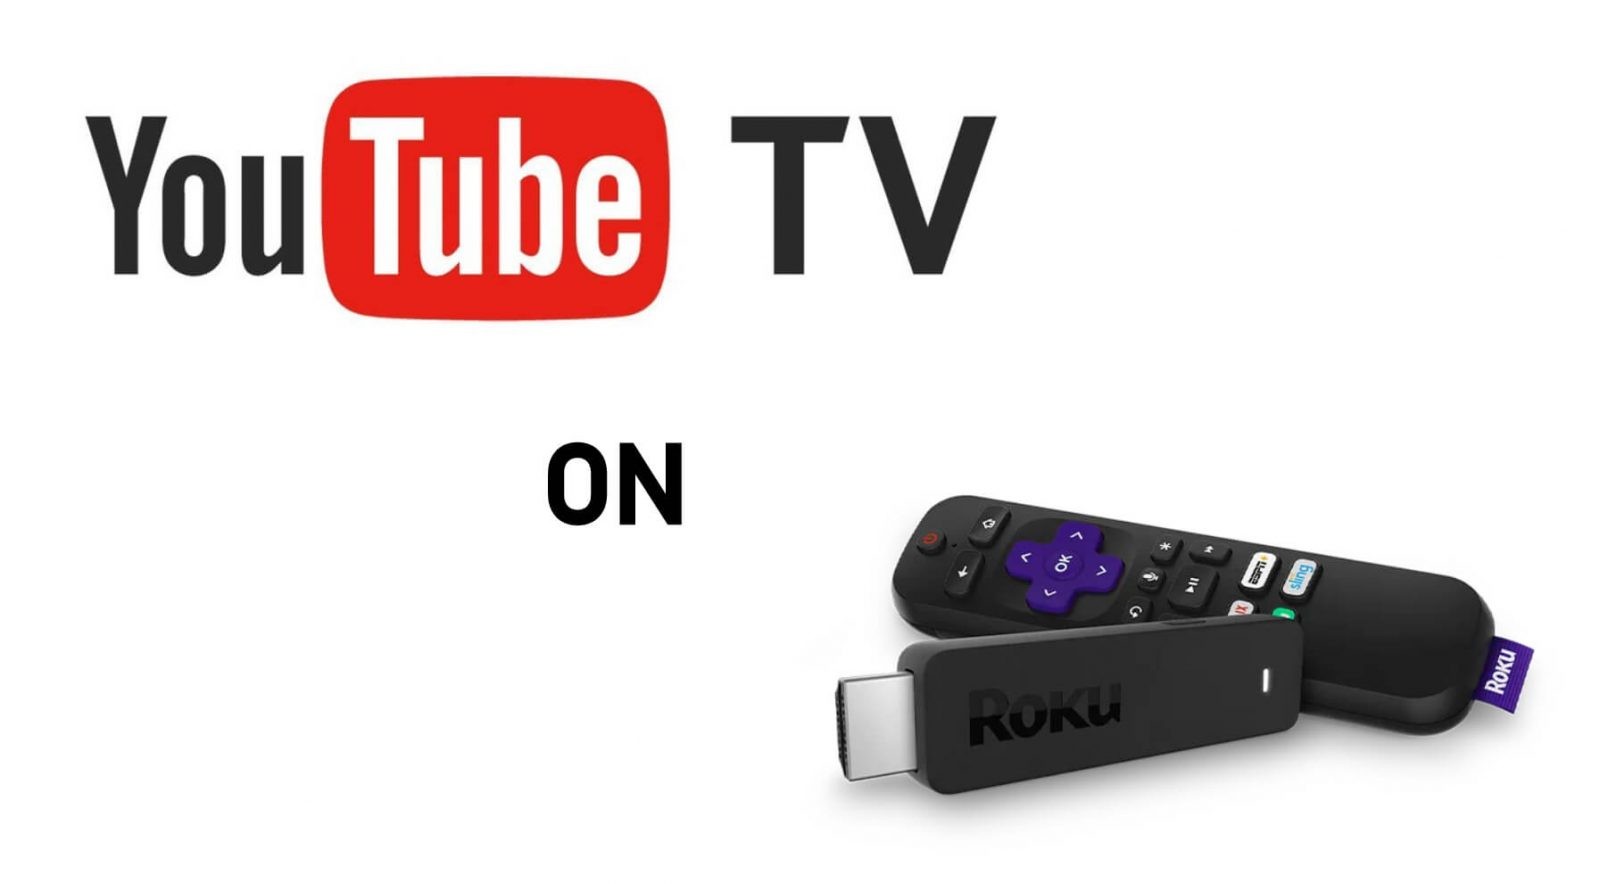 كيف تحصل على YouTube التلفزيون على جهاز Roku الخاص بك؟